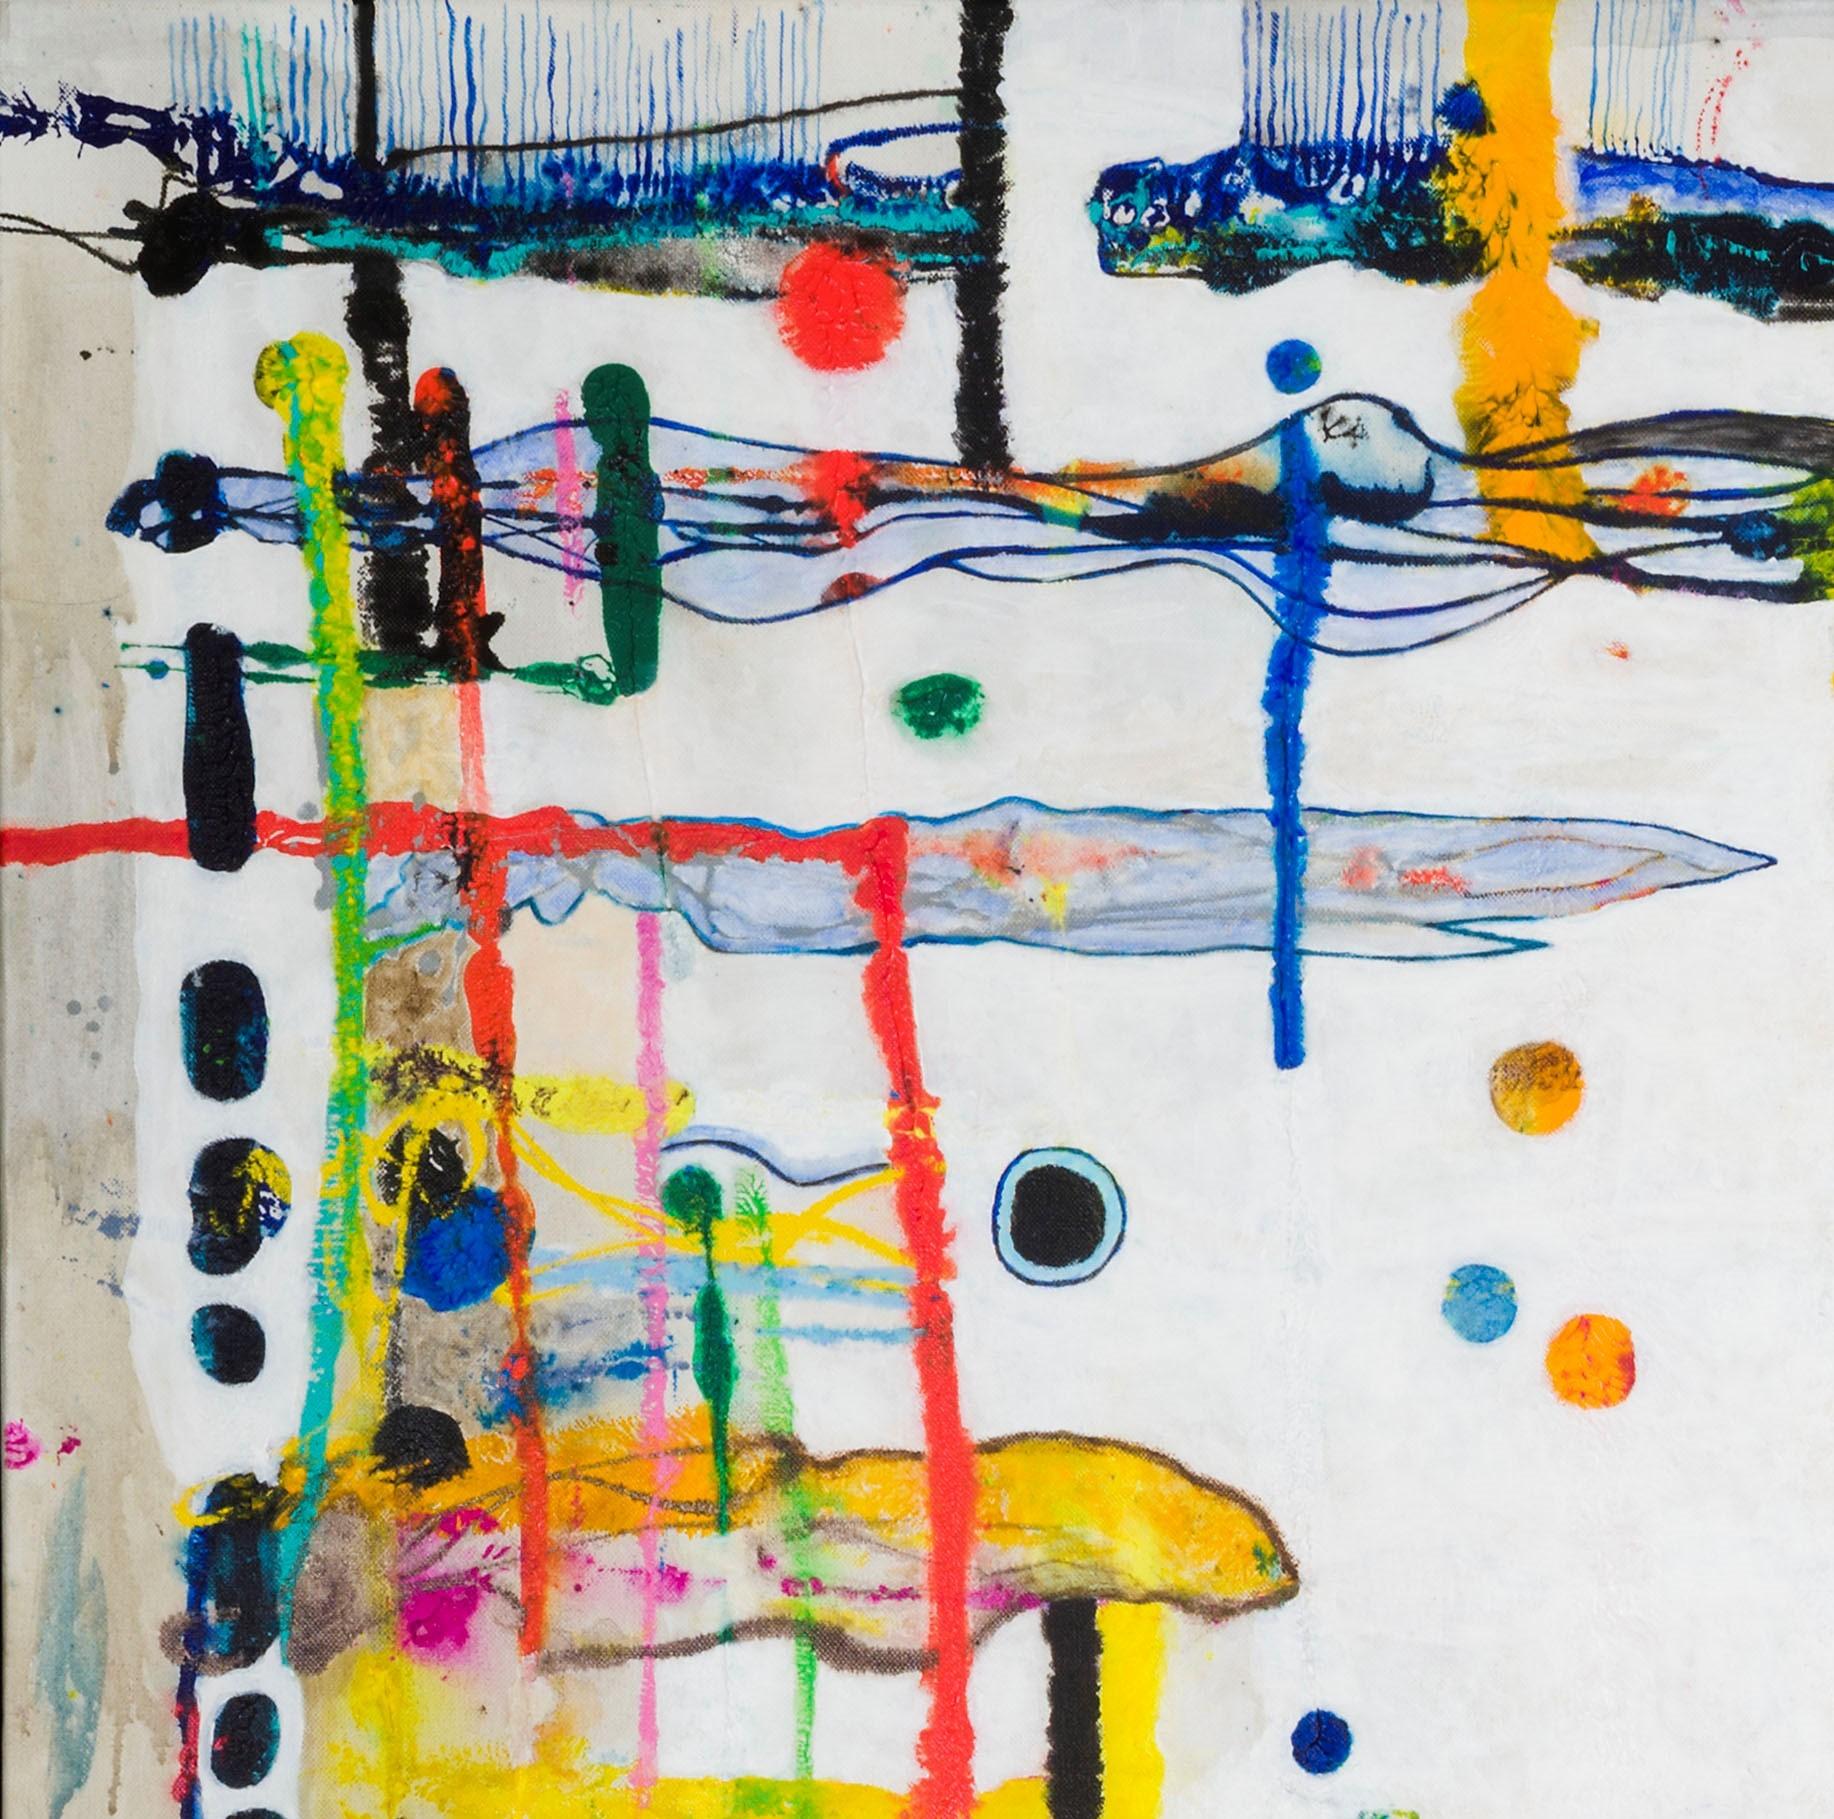 Artiste : Detlef E. Aderhold

Médium : Médias mixtes sur toile

Édition : Peinture abstraite originale en turquoise, vert, jaune, bleu, rouge et noir


À propos de l'artiste :

Detlef E. Aderhold est un peintre abstrait contemporain